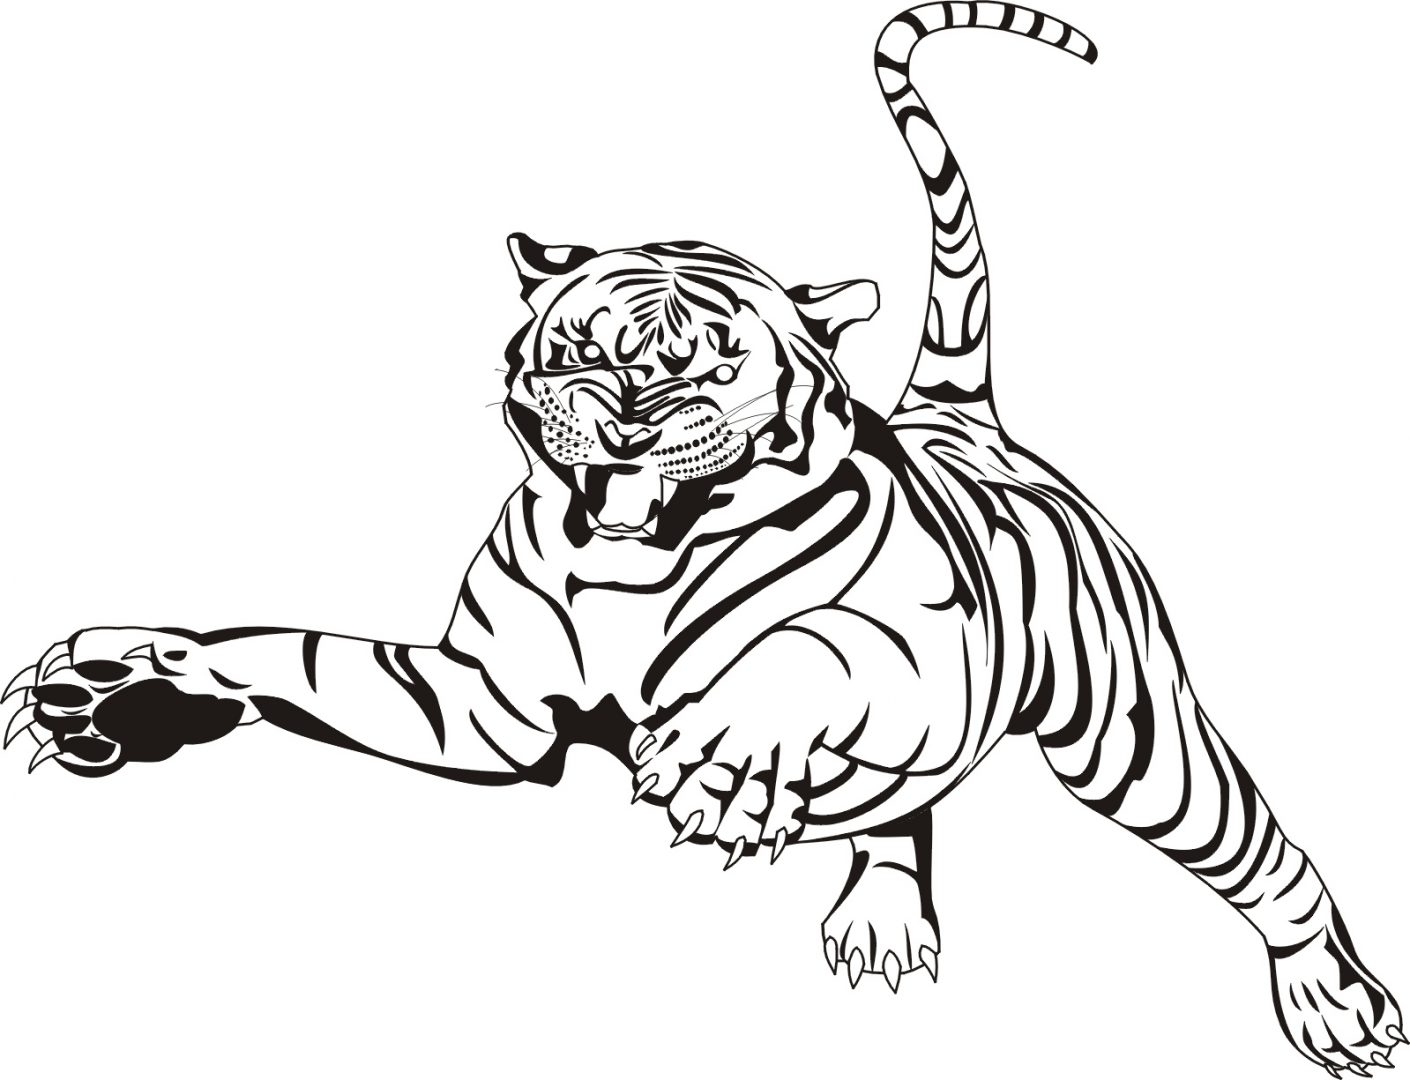 Dibujo de tigre saltando :: Imágenes y fotos